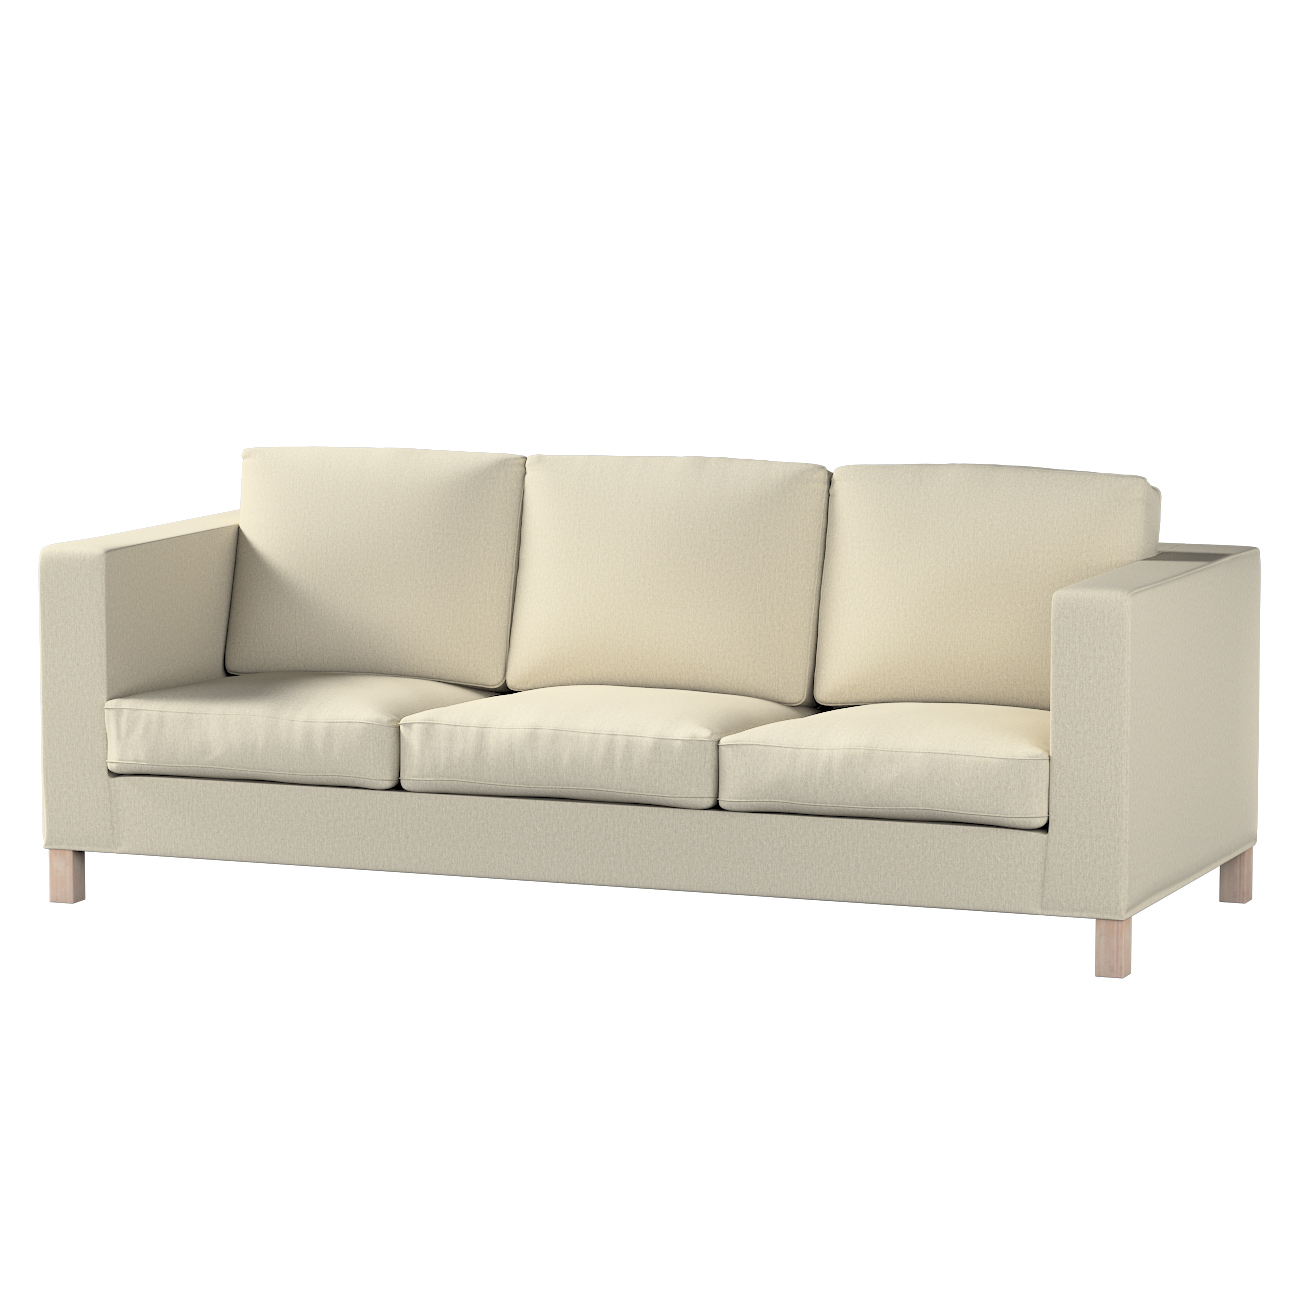 Bezug für Karlanda 3-Sitzer Sofa nicht ausklappbar, kurz, beige-grau, Bezug günstig online kaufen